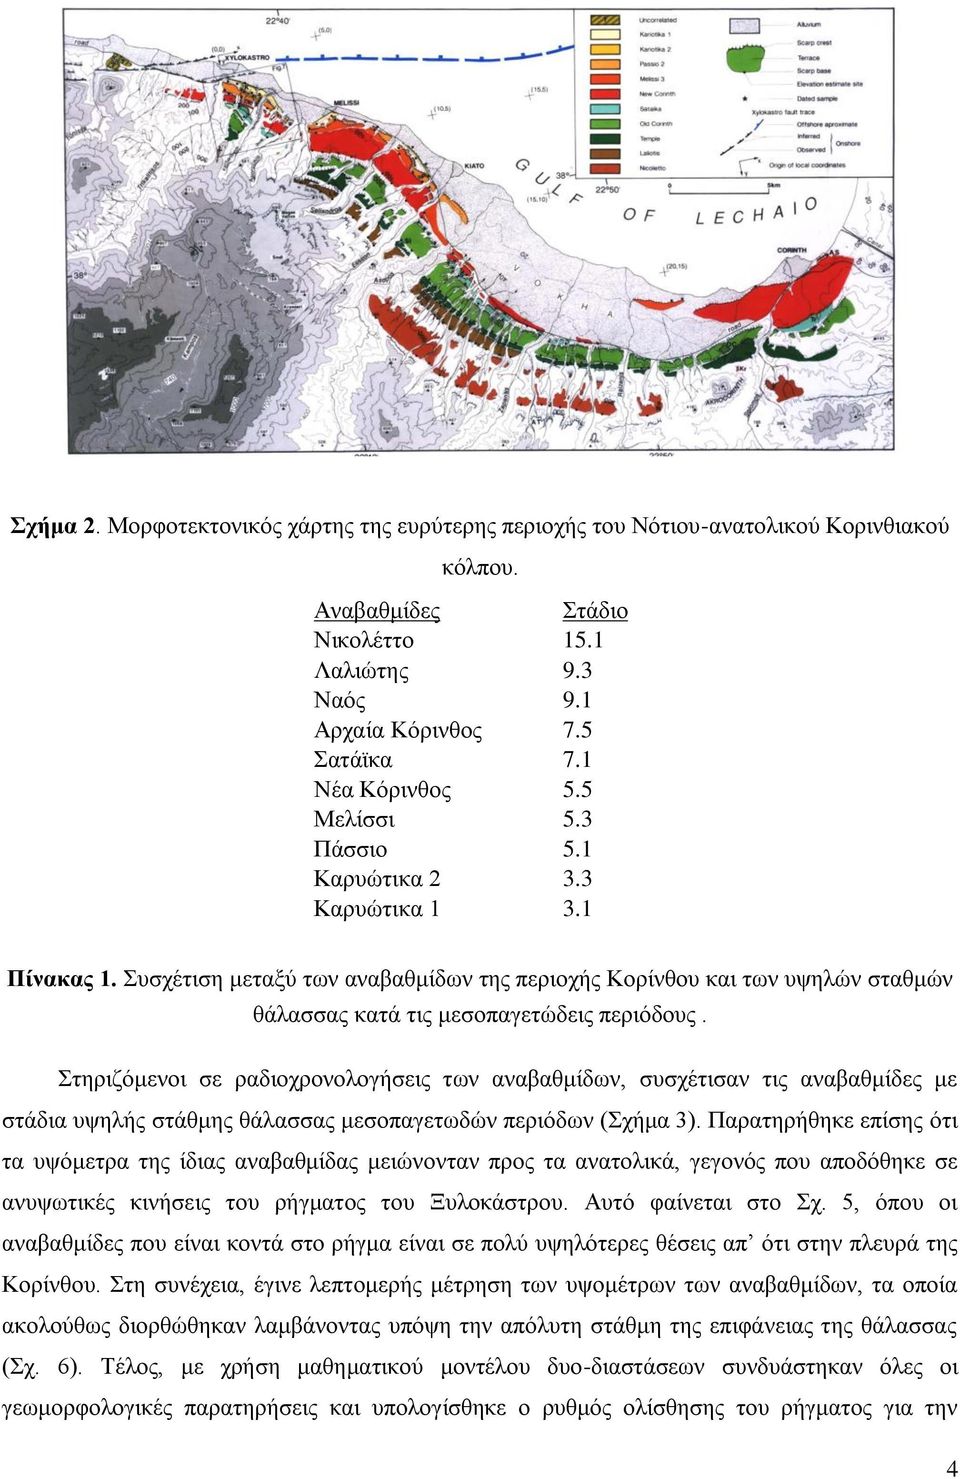 Συσχέτιση μεταξύ των αναβαθμίδων της περιοχής Κορίνθου και των υψηλών σταθμών θάλασσας κατά τις μεσοπαγετώδεις περιόδους.